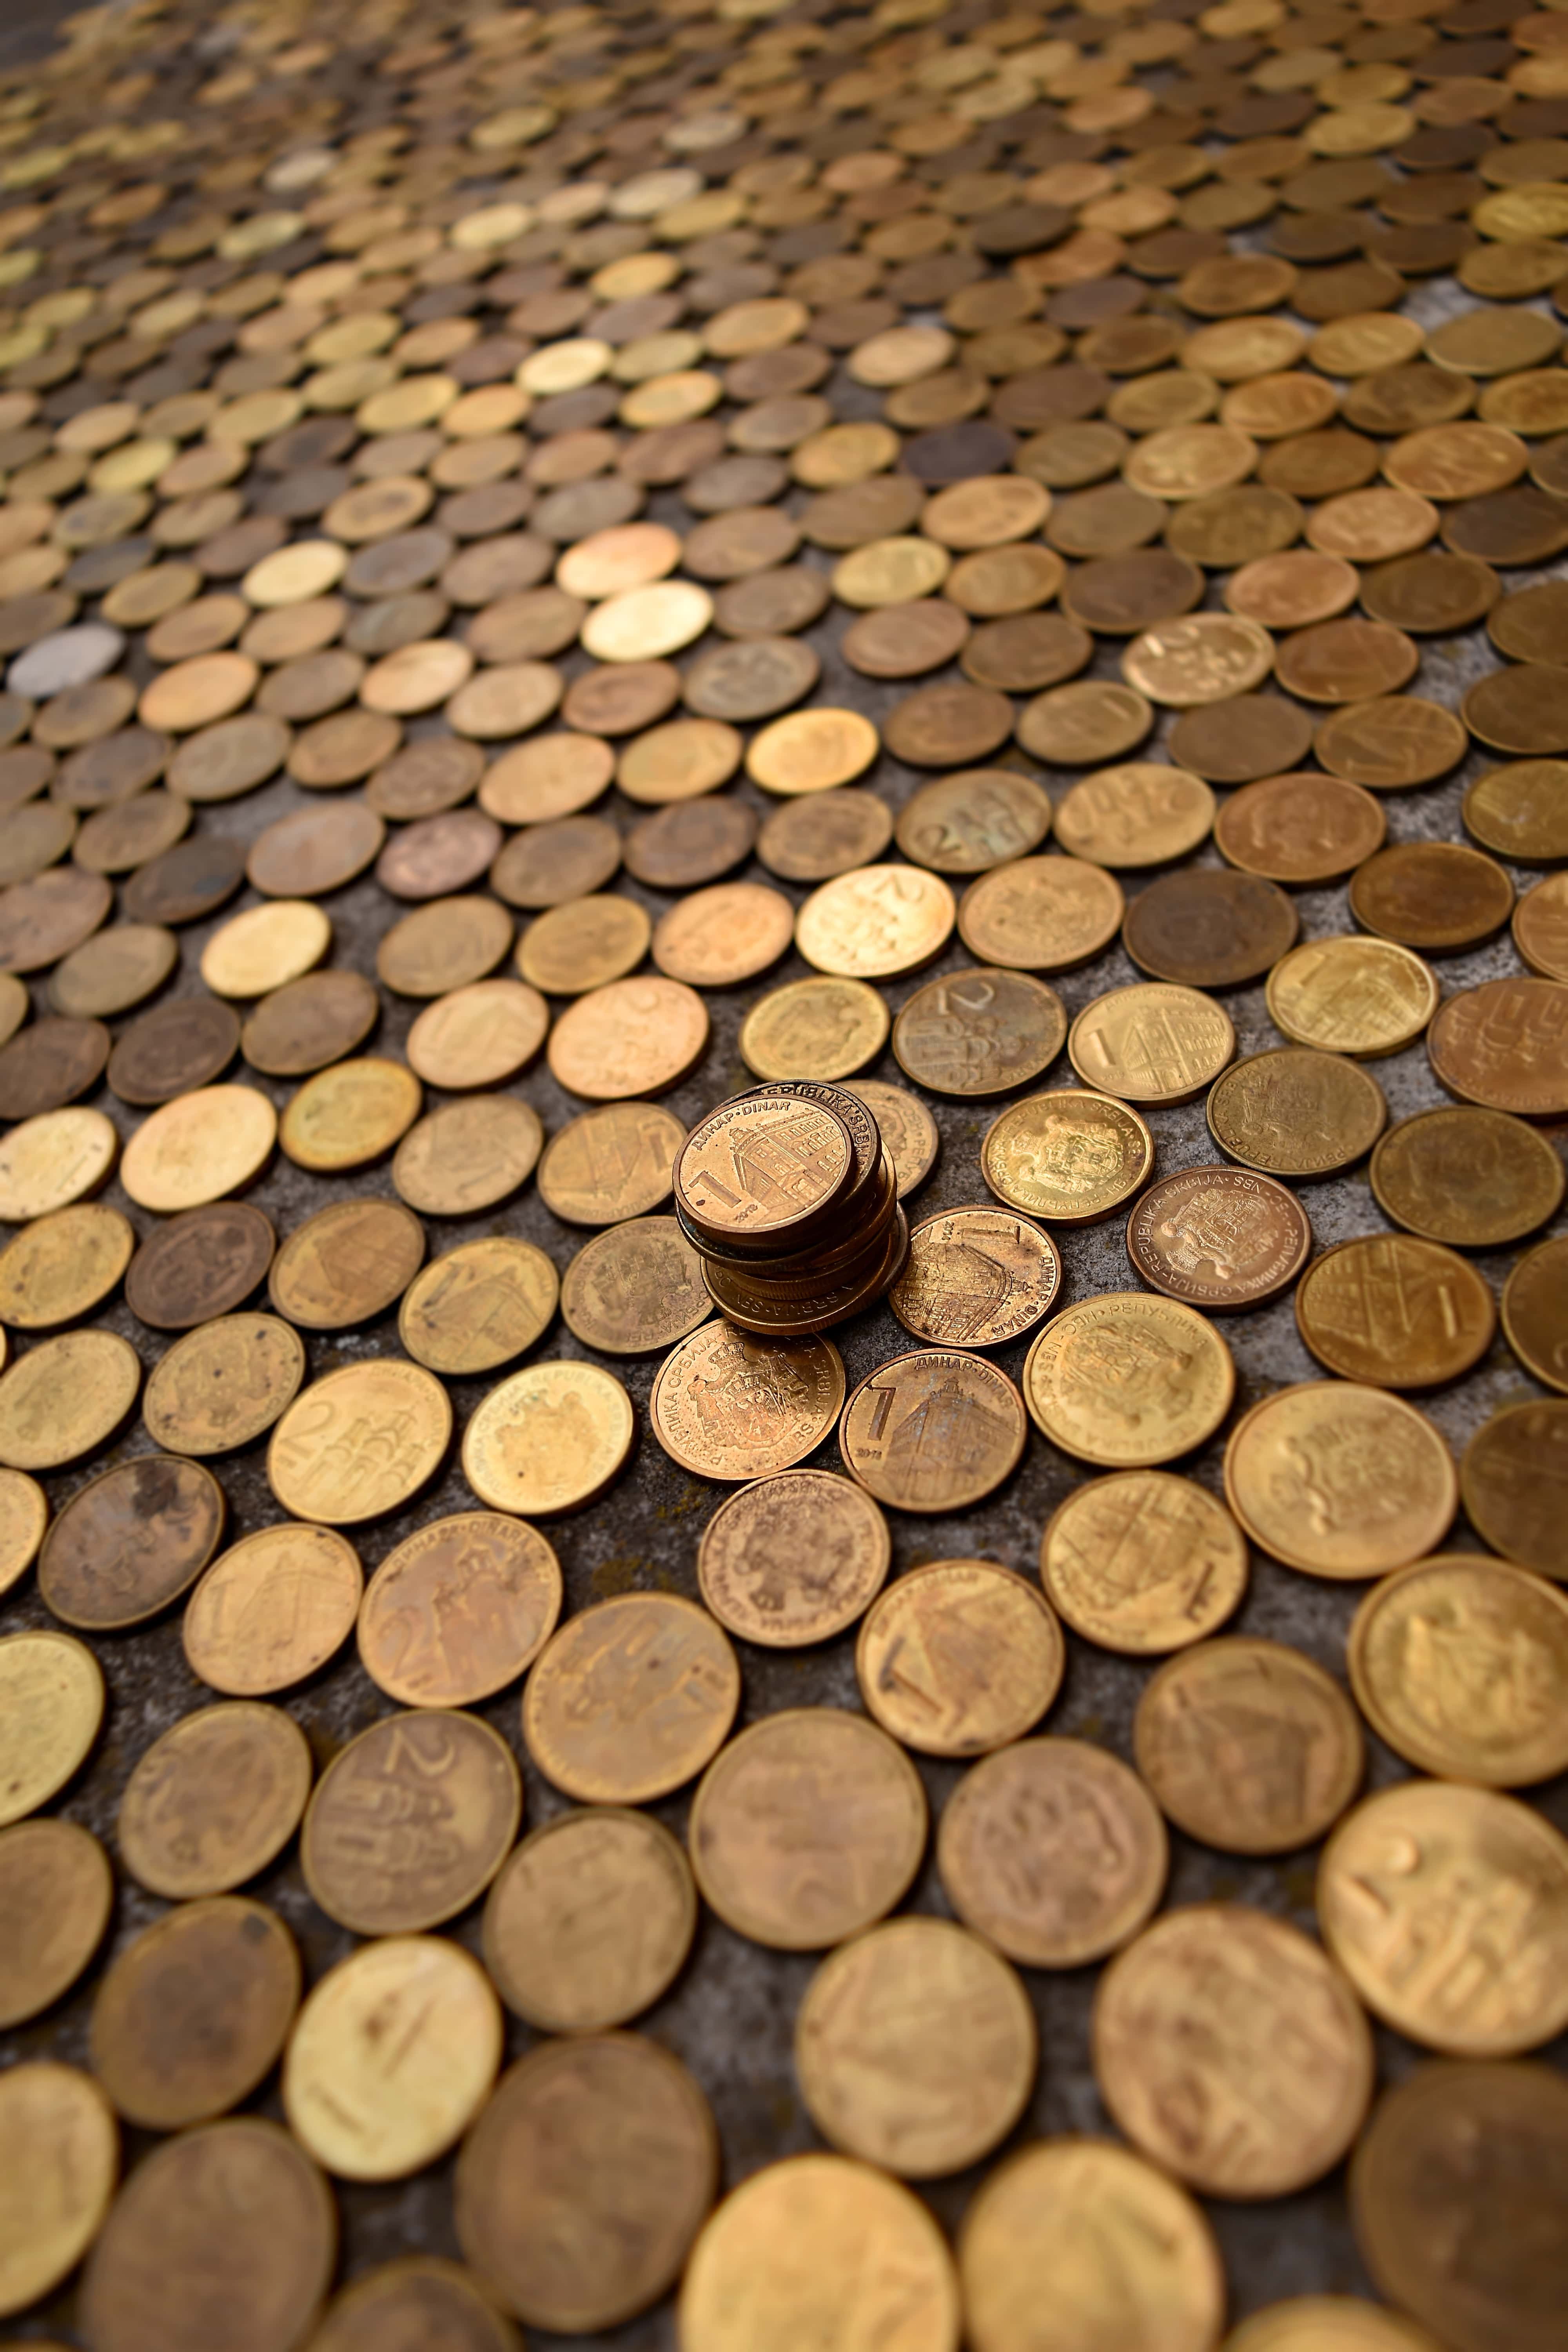 Бесплатное изображение: деньги, монеты, металл, текстура, латунь, Сербия, наличные, Экономия, кора, стеки